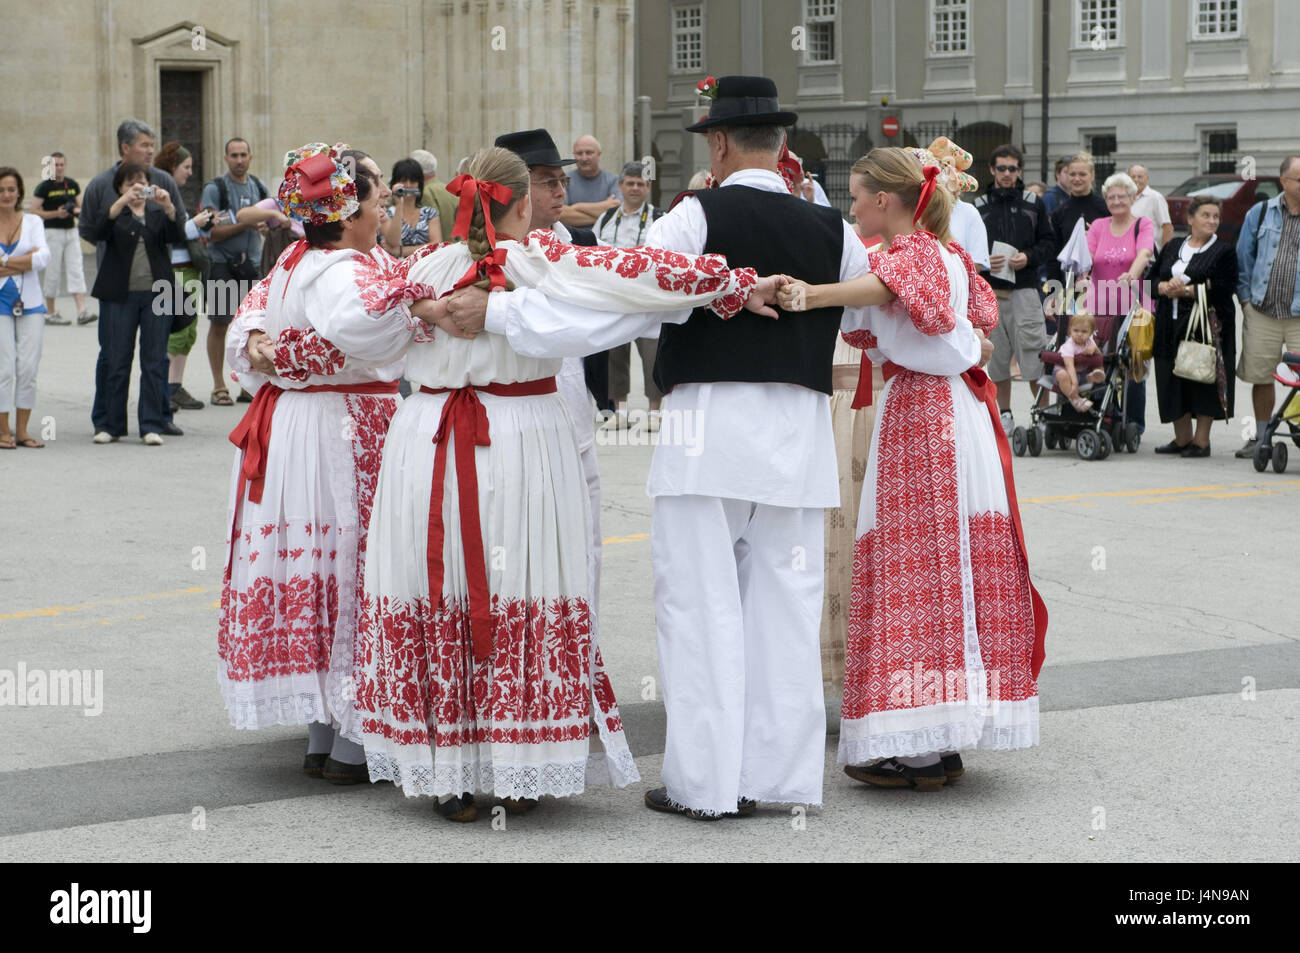 Croazia, Zagabria, folklore, balli di gruppo, costume nazionale, cerchio, stand, nessun modello di rilascio, Foto Stock